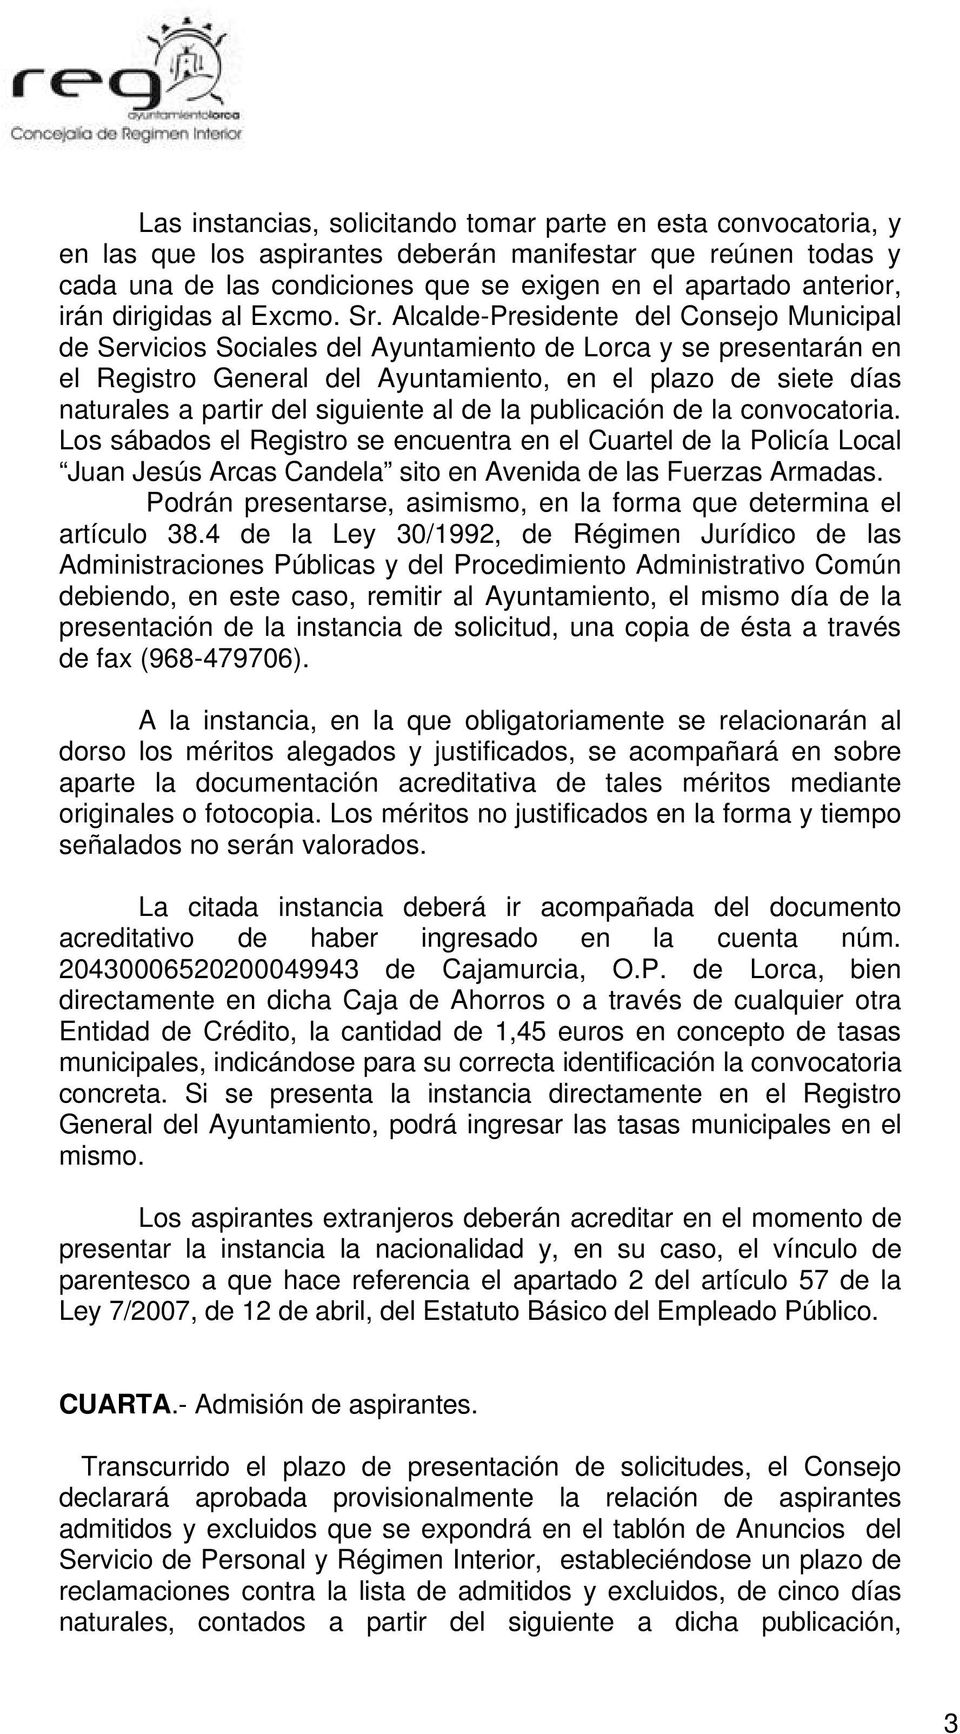 Alcalde-Presidente del Consejo Municipal de Servicios Sociales del Ayuntamiento de Lorca y se presentarán en el Registro General del Ayuntamiento, en el plazo de siete días naturales a partir del